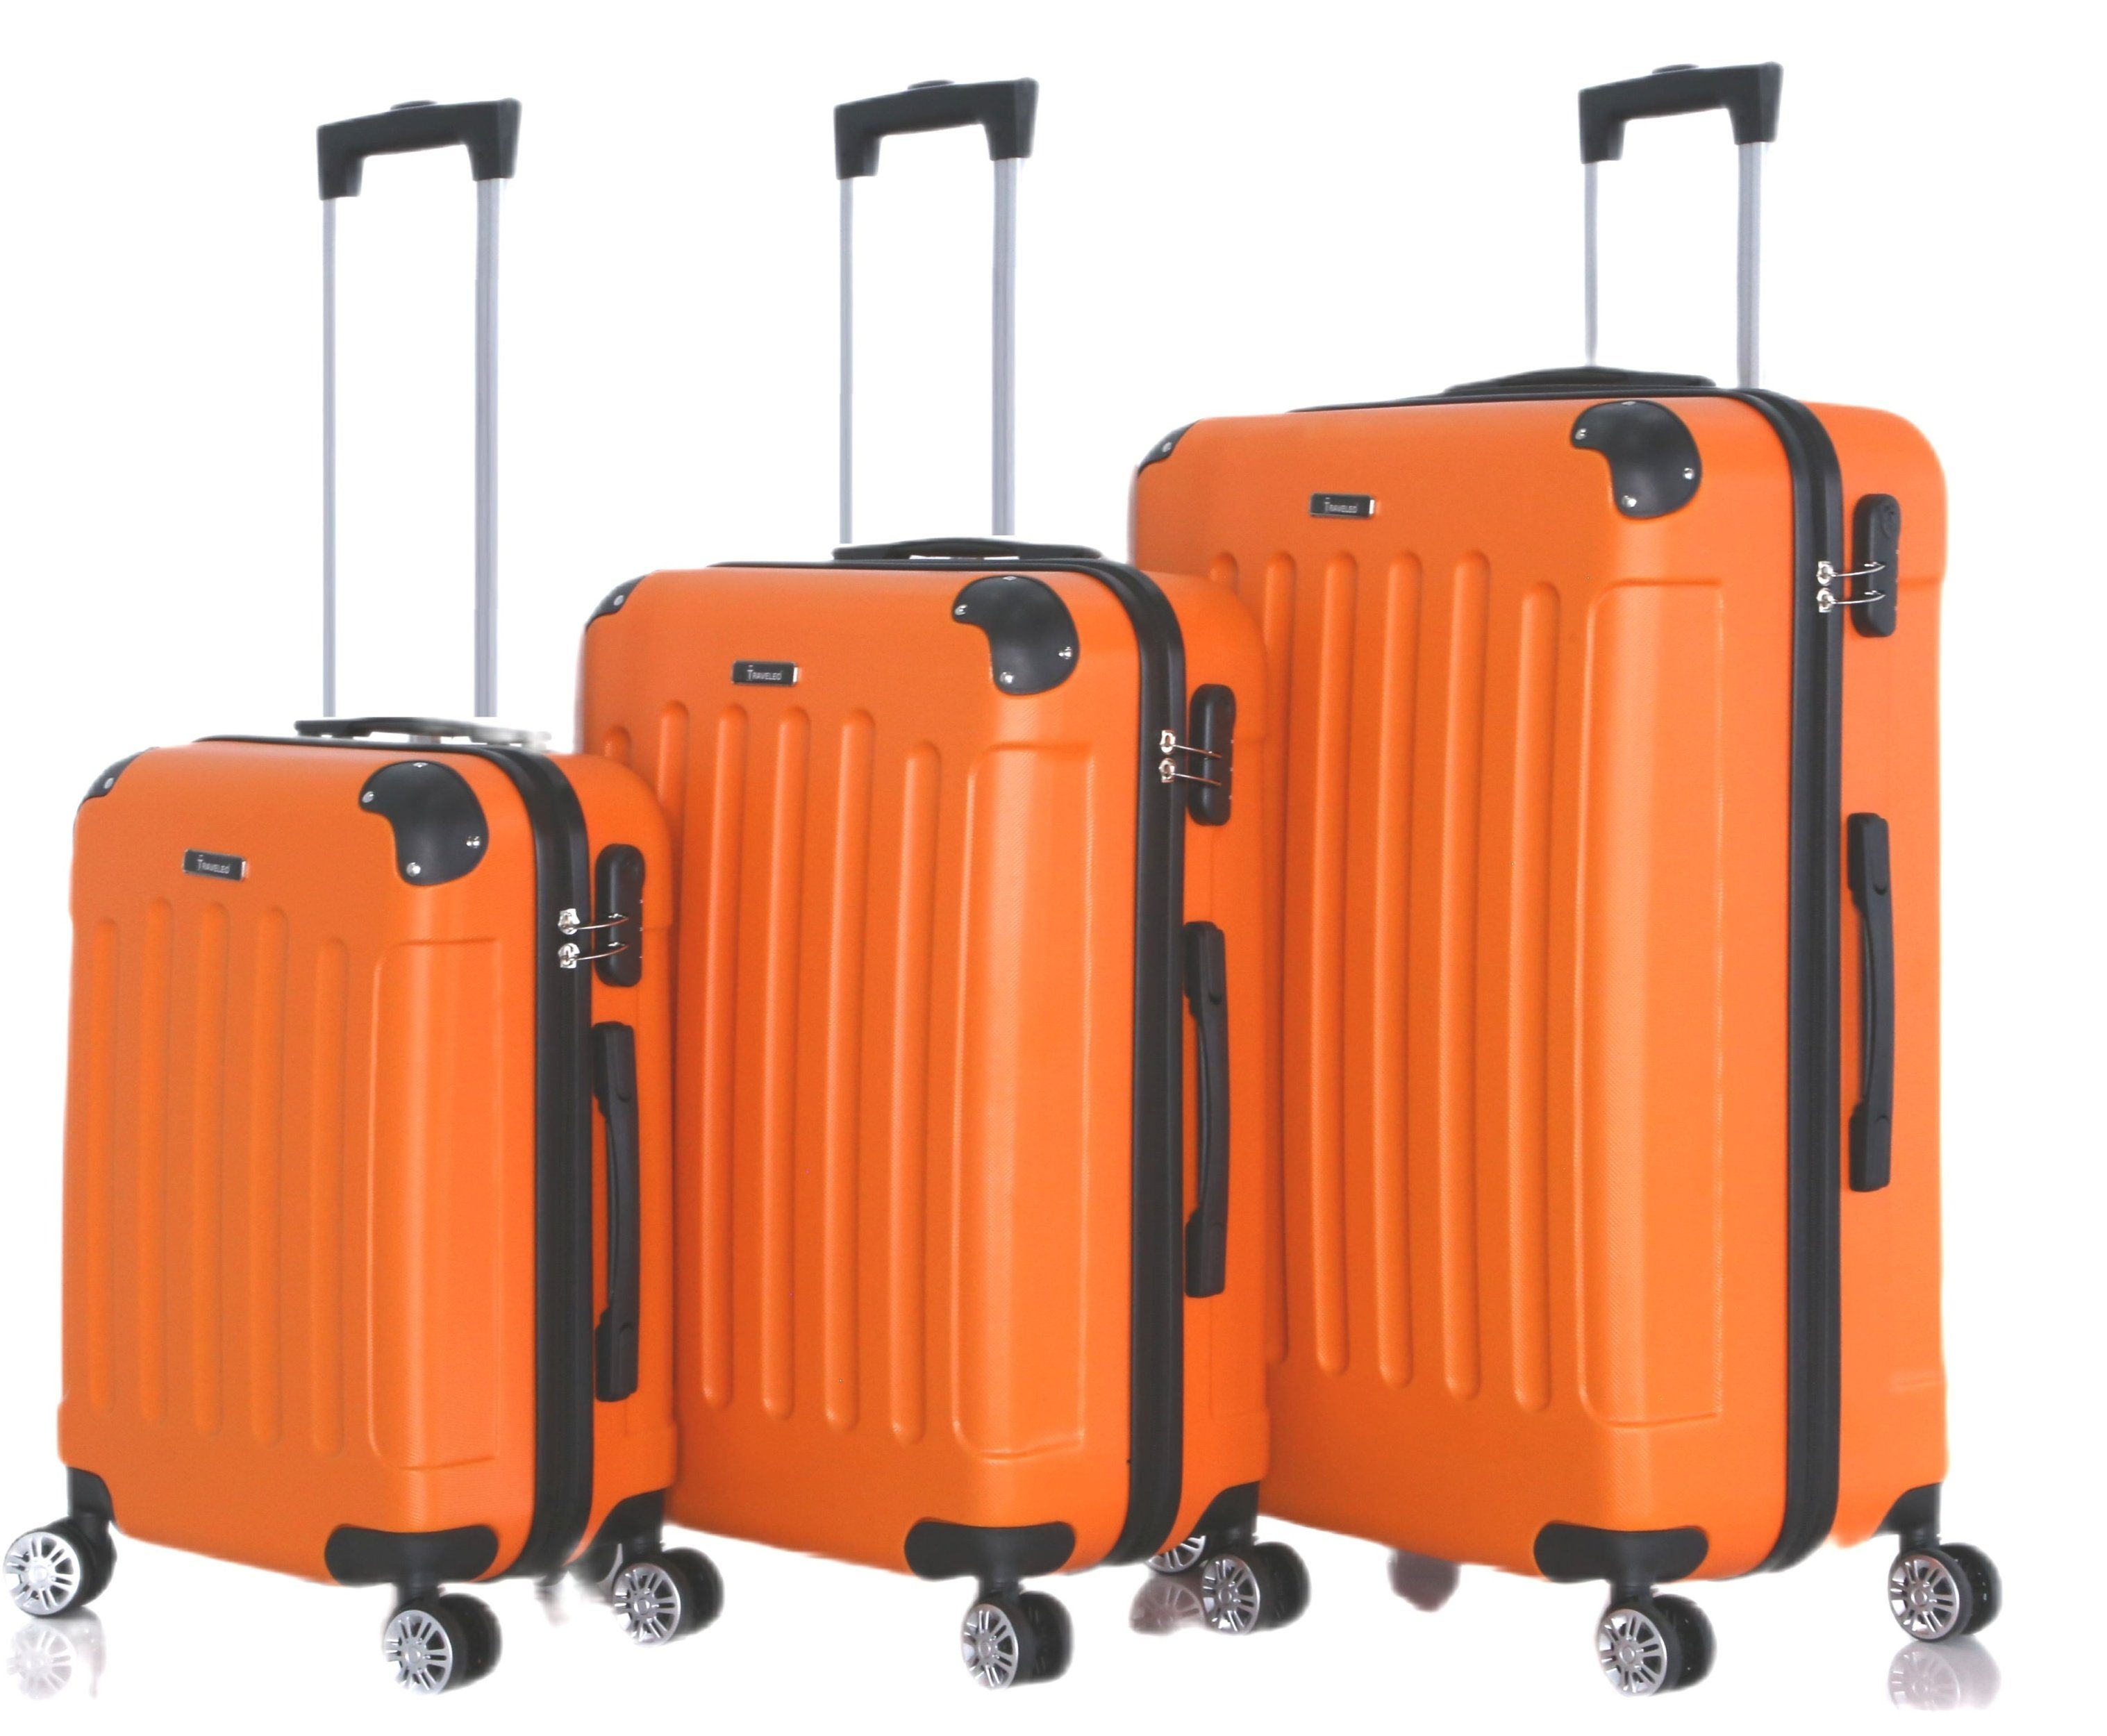 Rungassi Kofferset Hartschalenkoffer Trolley Reisekoffer Koffer Set Rungassi orange ABS01